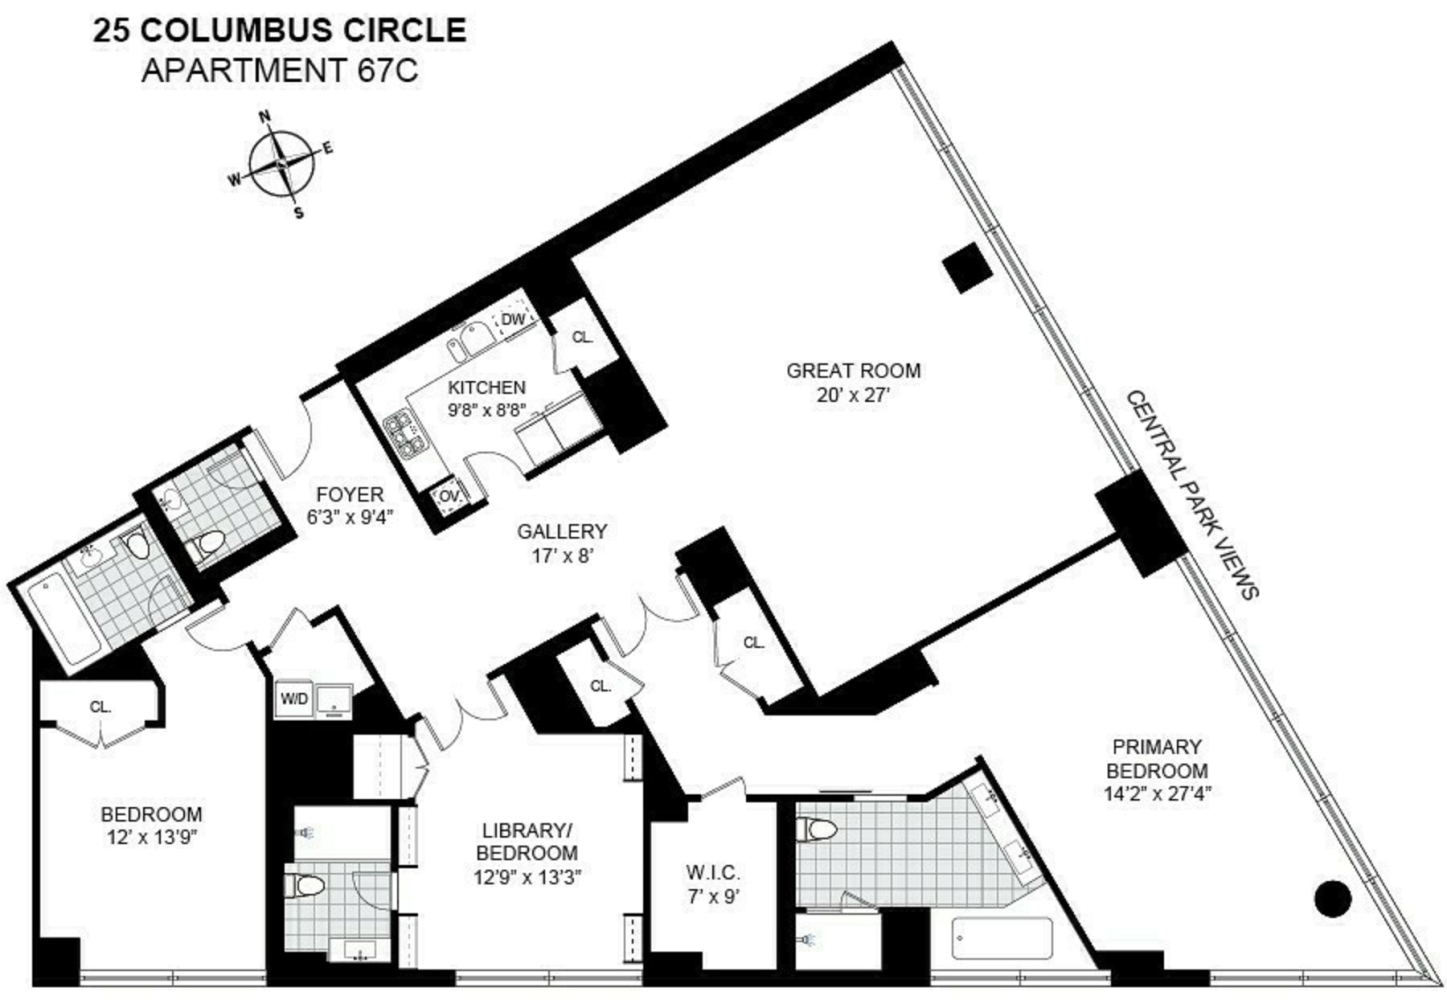 Floorplan for 25 Columbus Circle, 67C